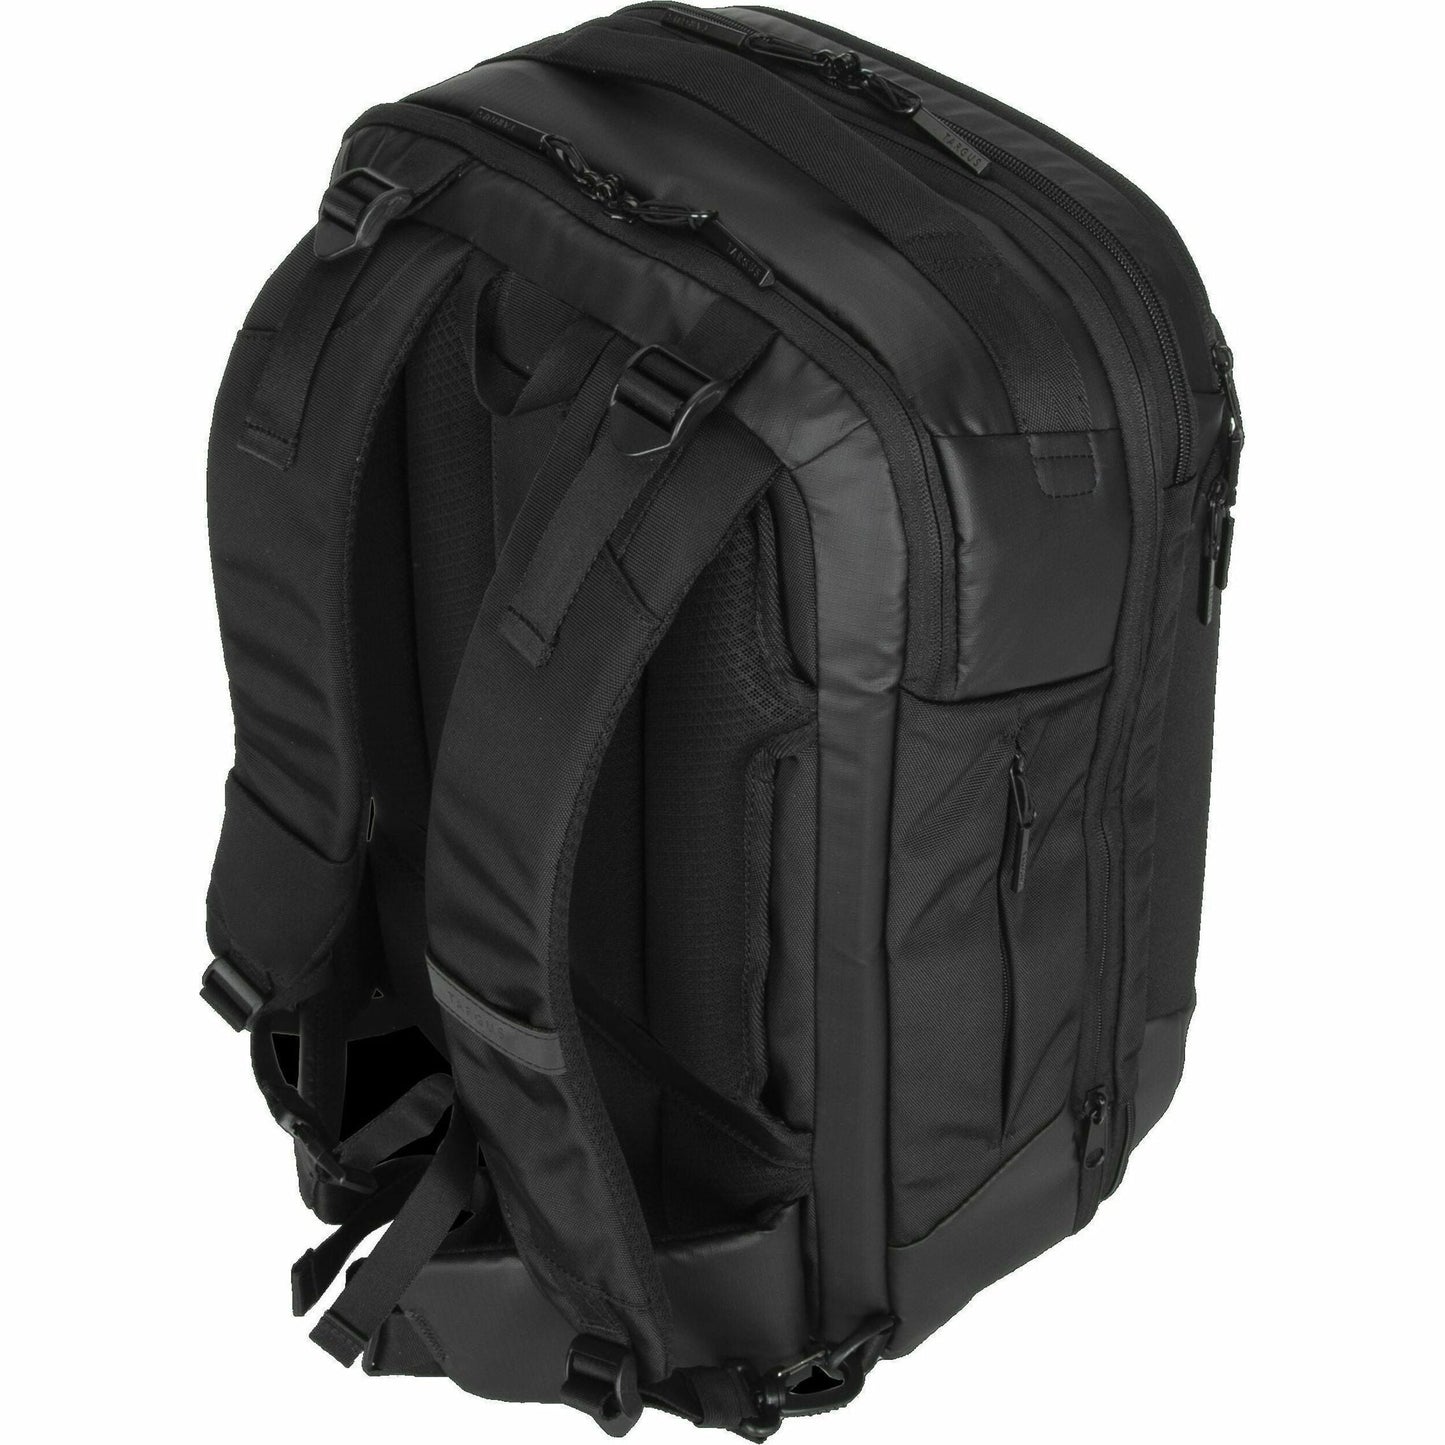 Targus TBB612GL Carrying Case (Backpack) for 15.6" Notebook - Black